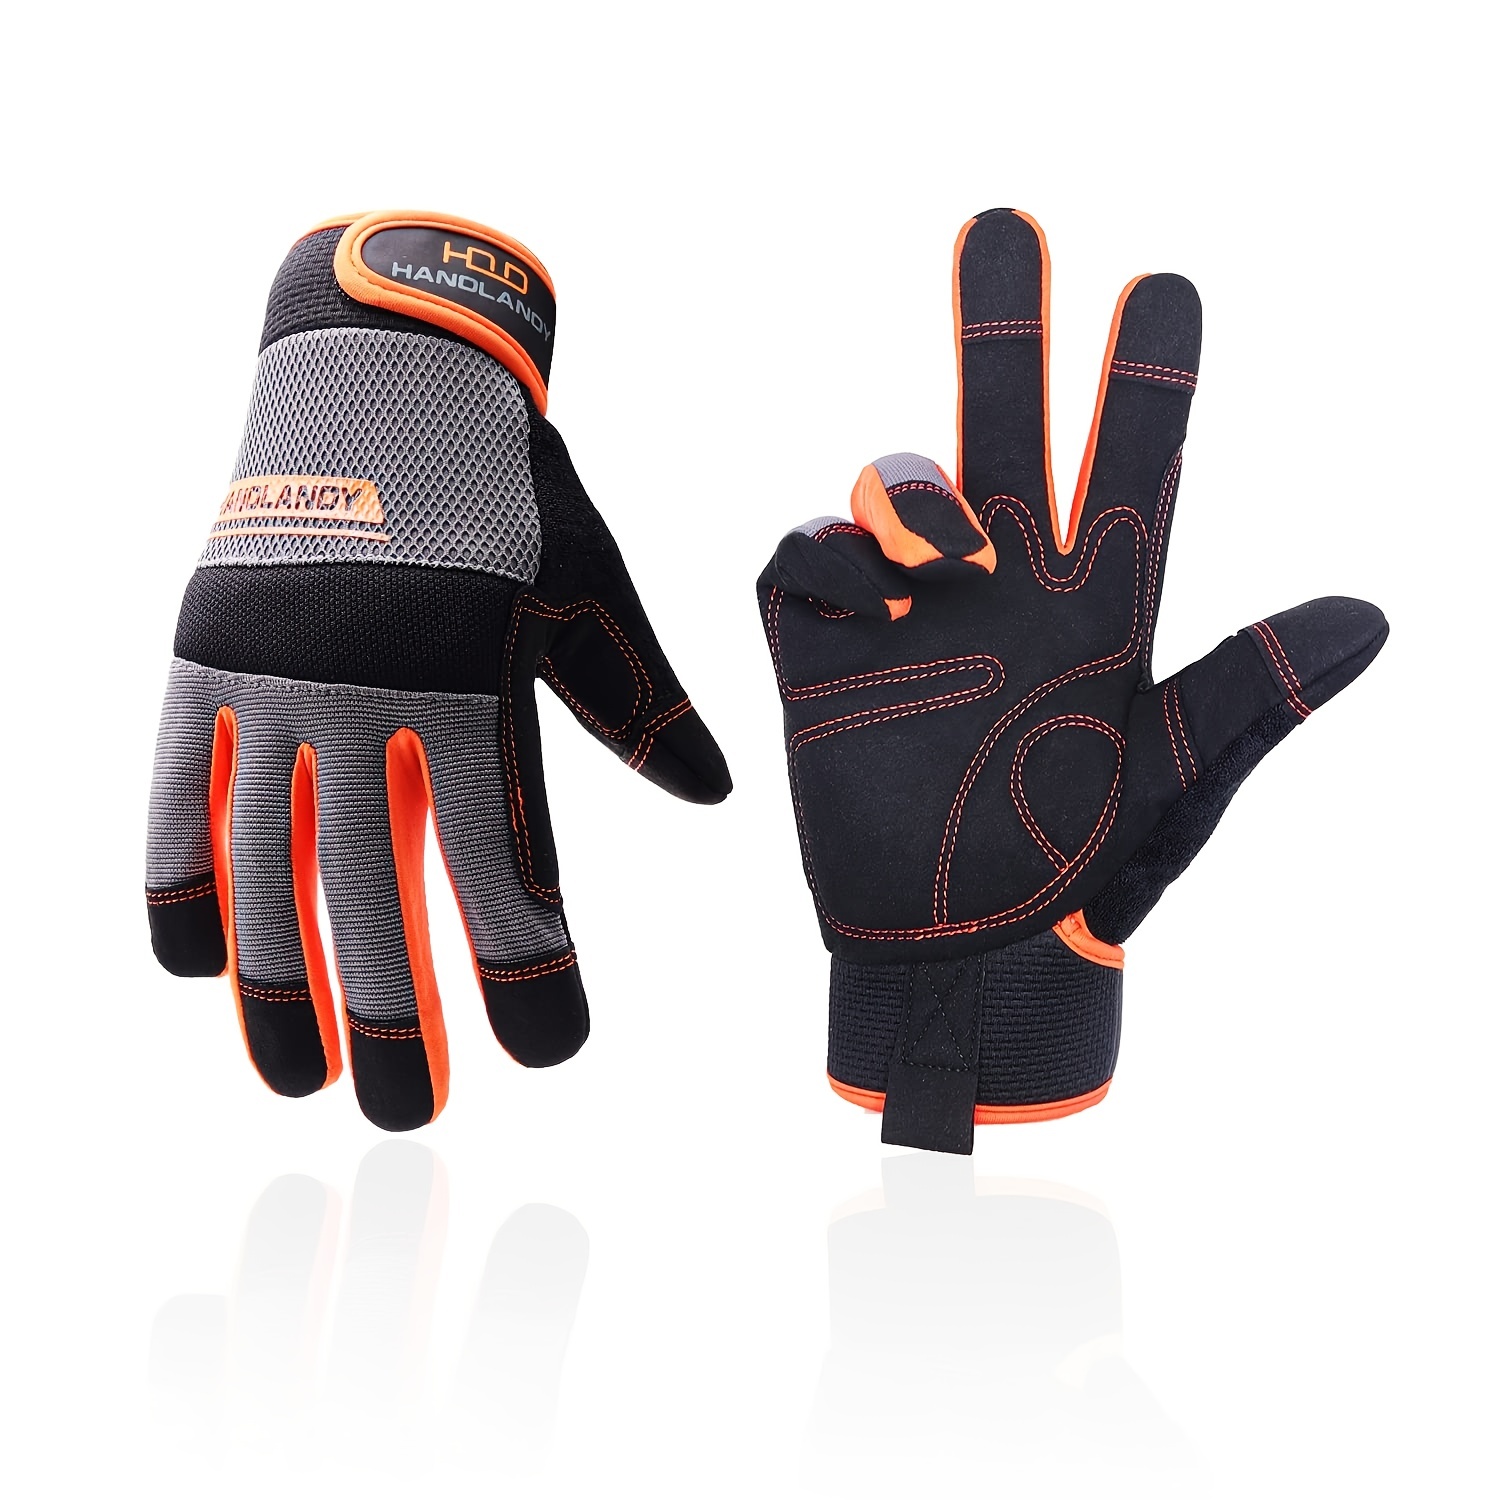 Cs-1 guantes de protección contra cortes de motosierra de cuero